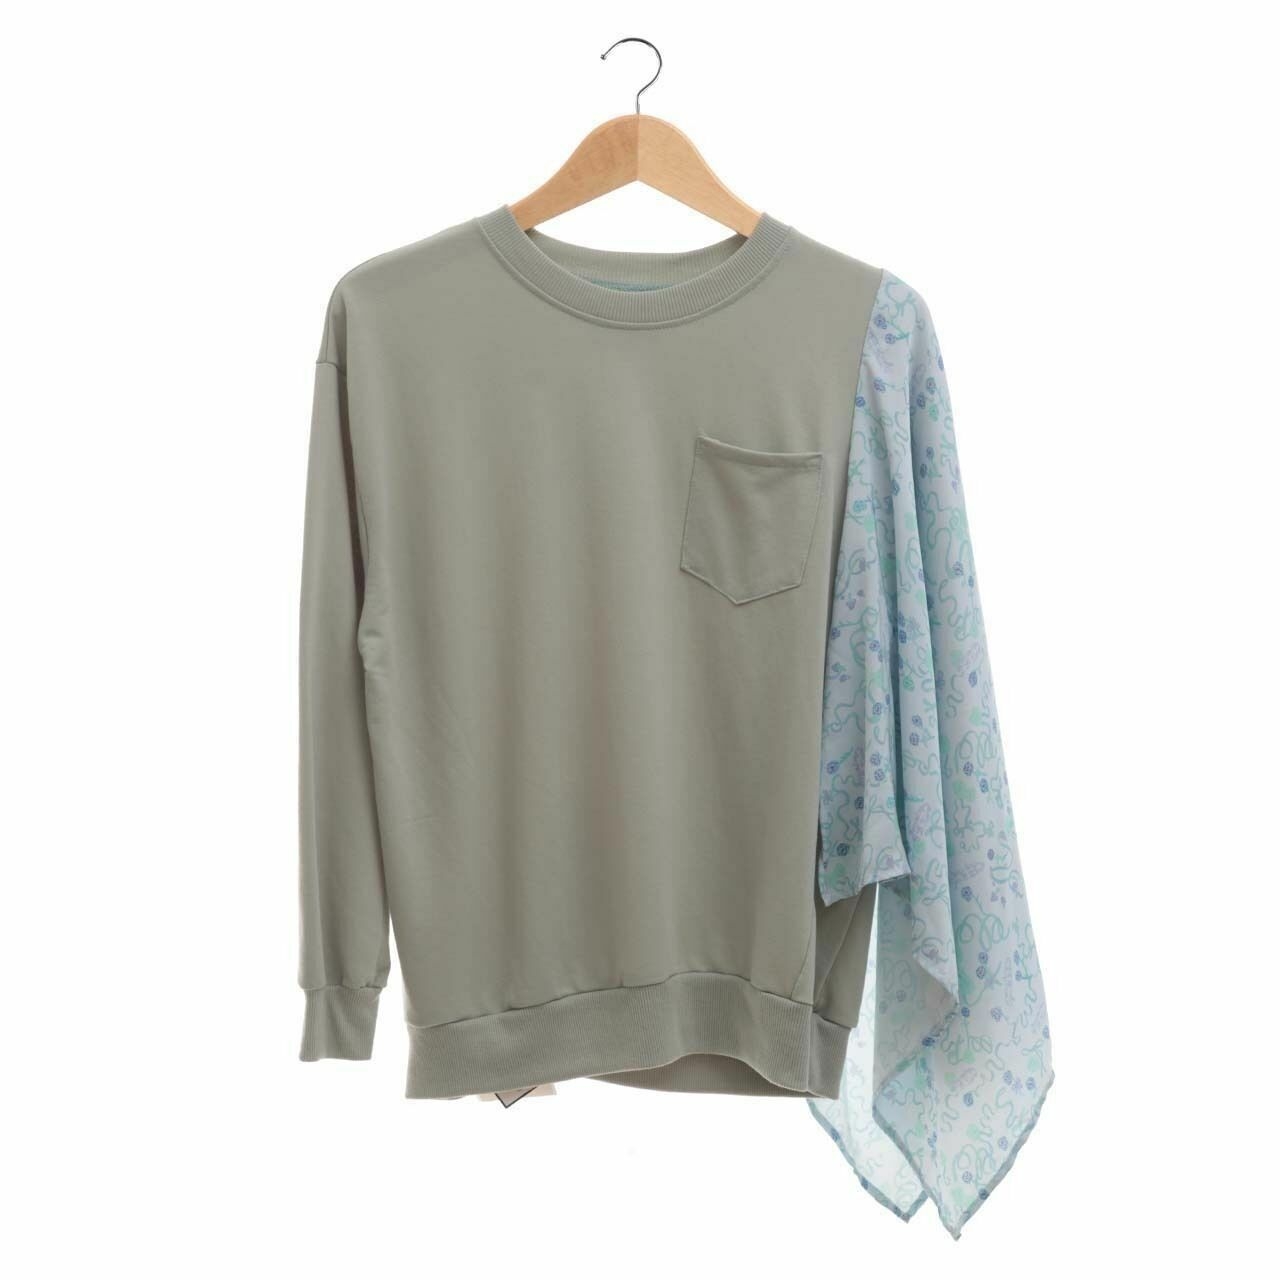 IKYK for Someday Mint & Multi Pattern Sweater